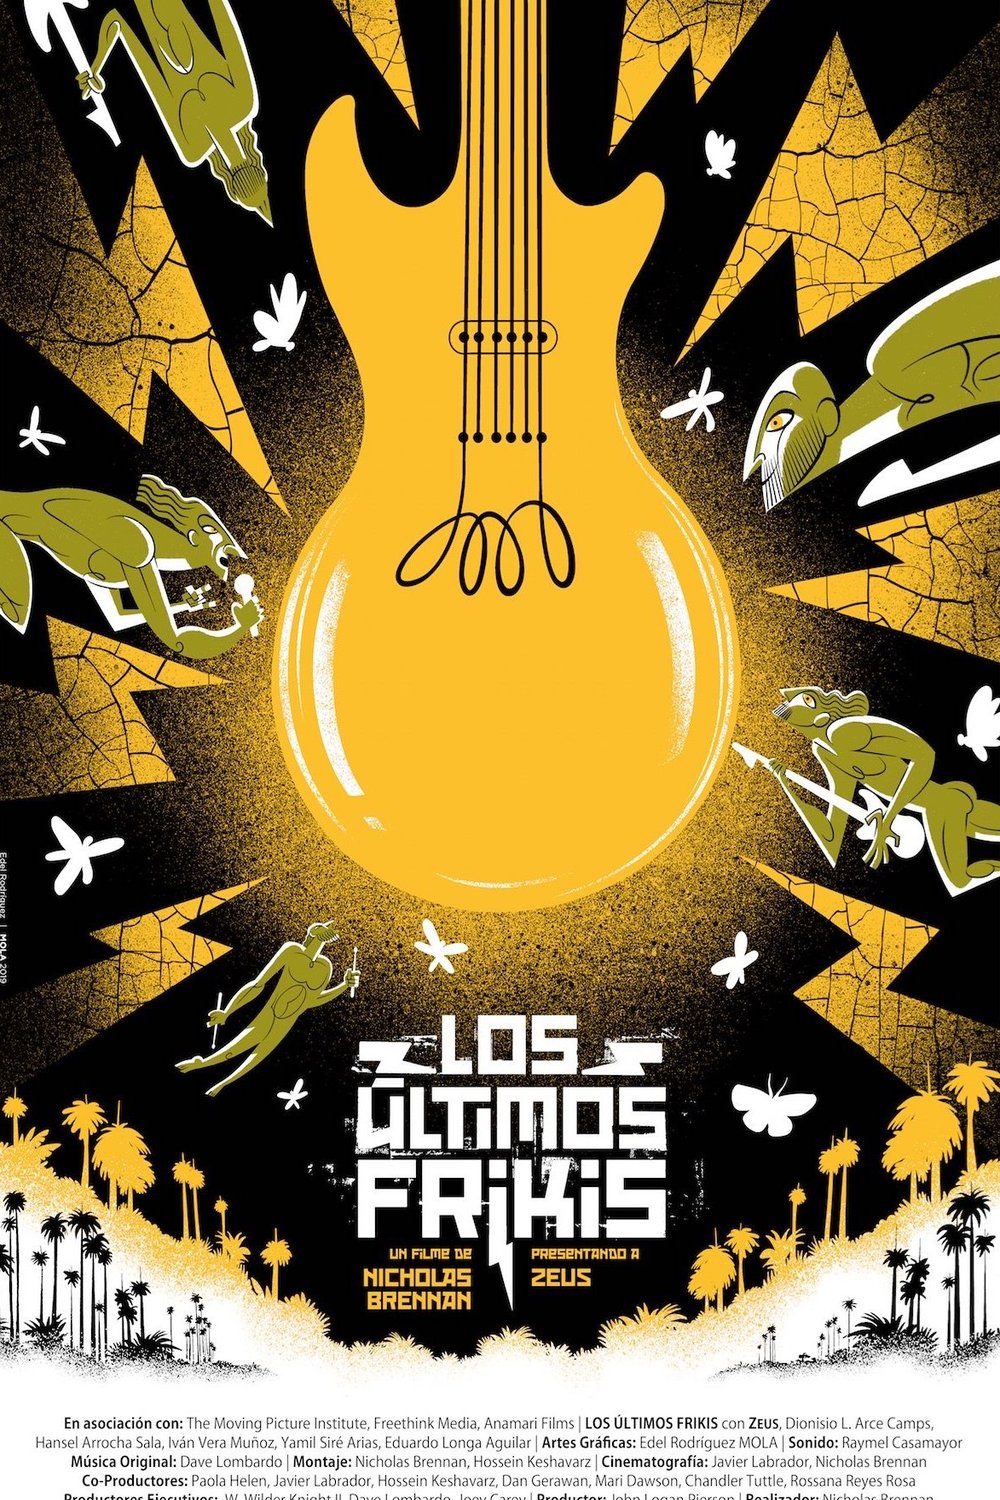 Spanish poster of the movie Los Últimos Frikis